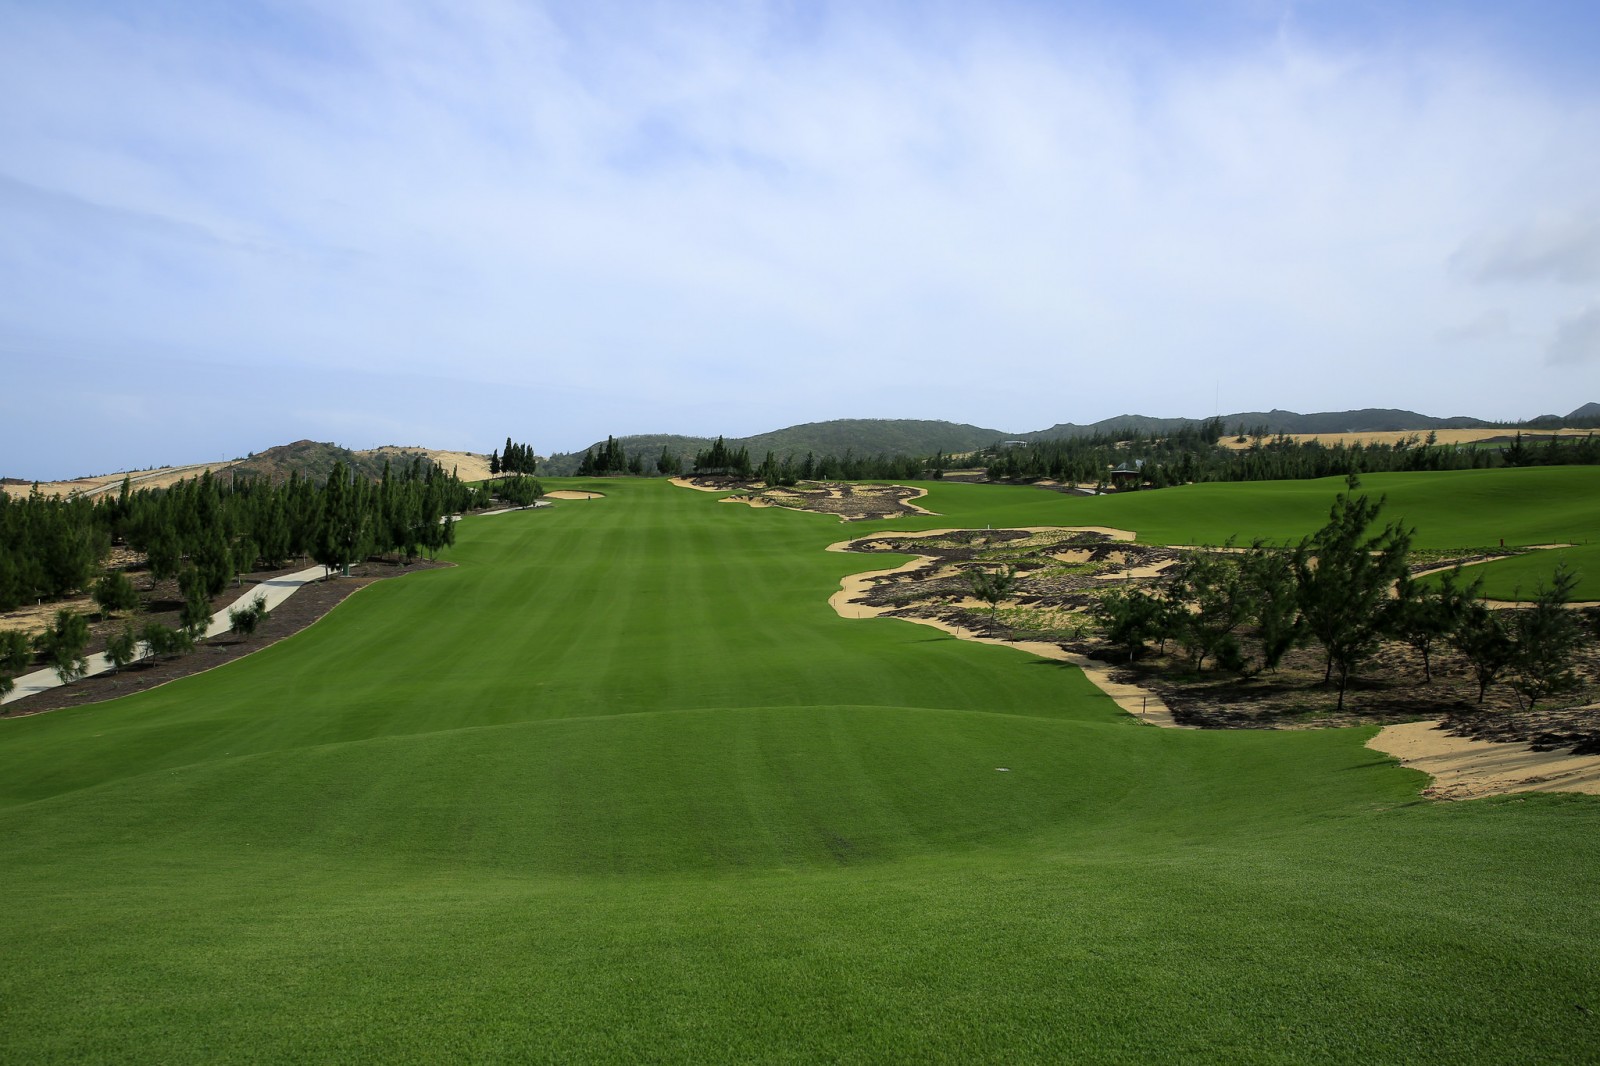 Sân golf FLC Quy Nhon Golf Links do Nicklaus Design và Flagstick, hai đơn vị đã thiết kế và quản lý thi công hơn 400 sân golf nổi tiếng trên thế giới đảm nhiệm.